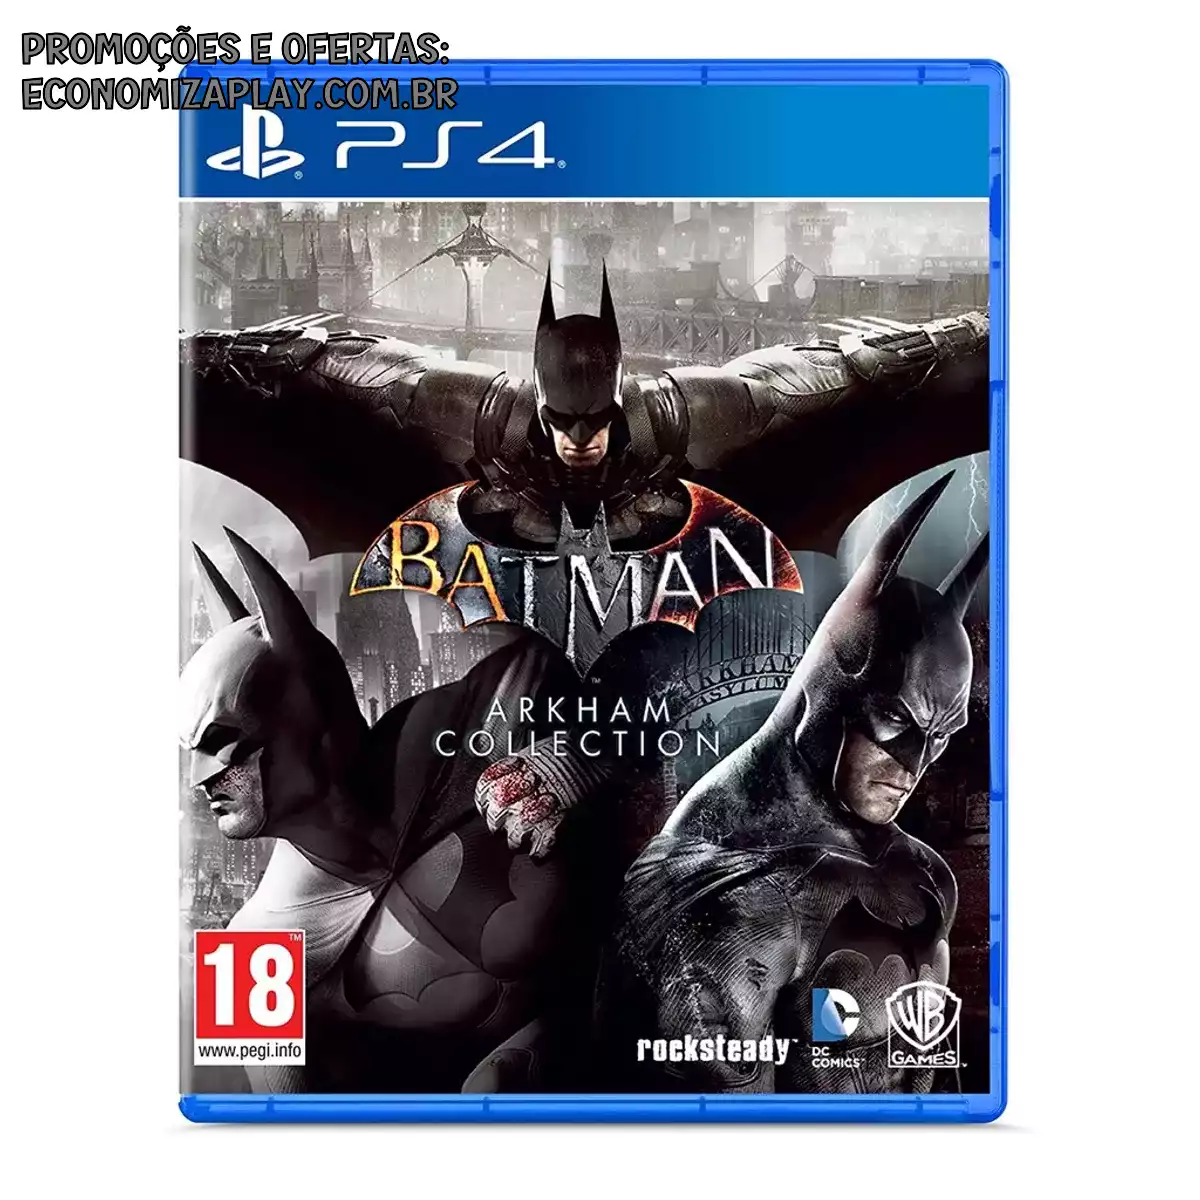 Batman Arkham Collection PS4 EUR Midia Fisica